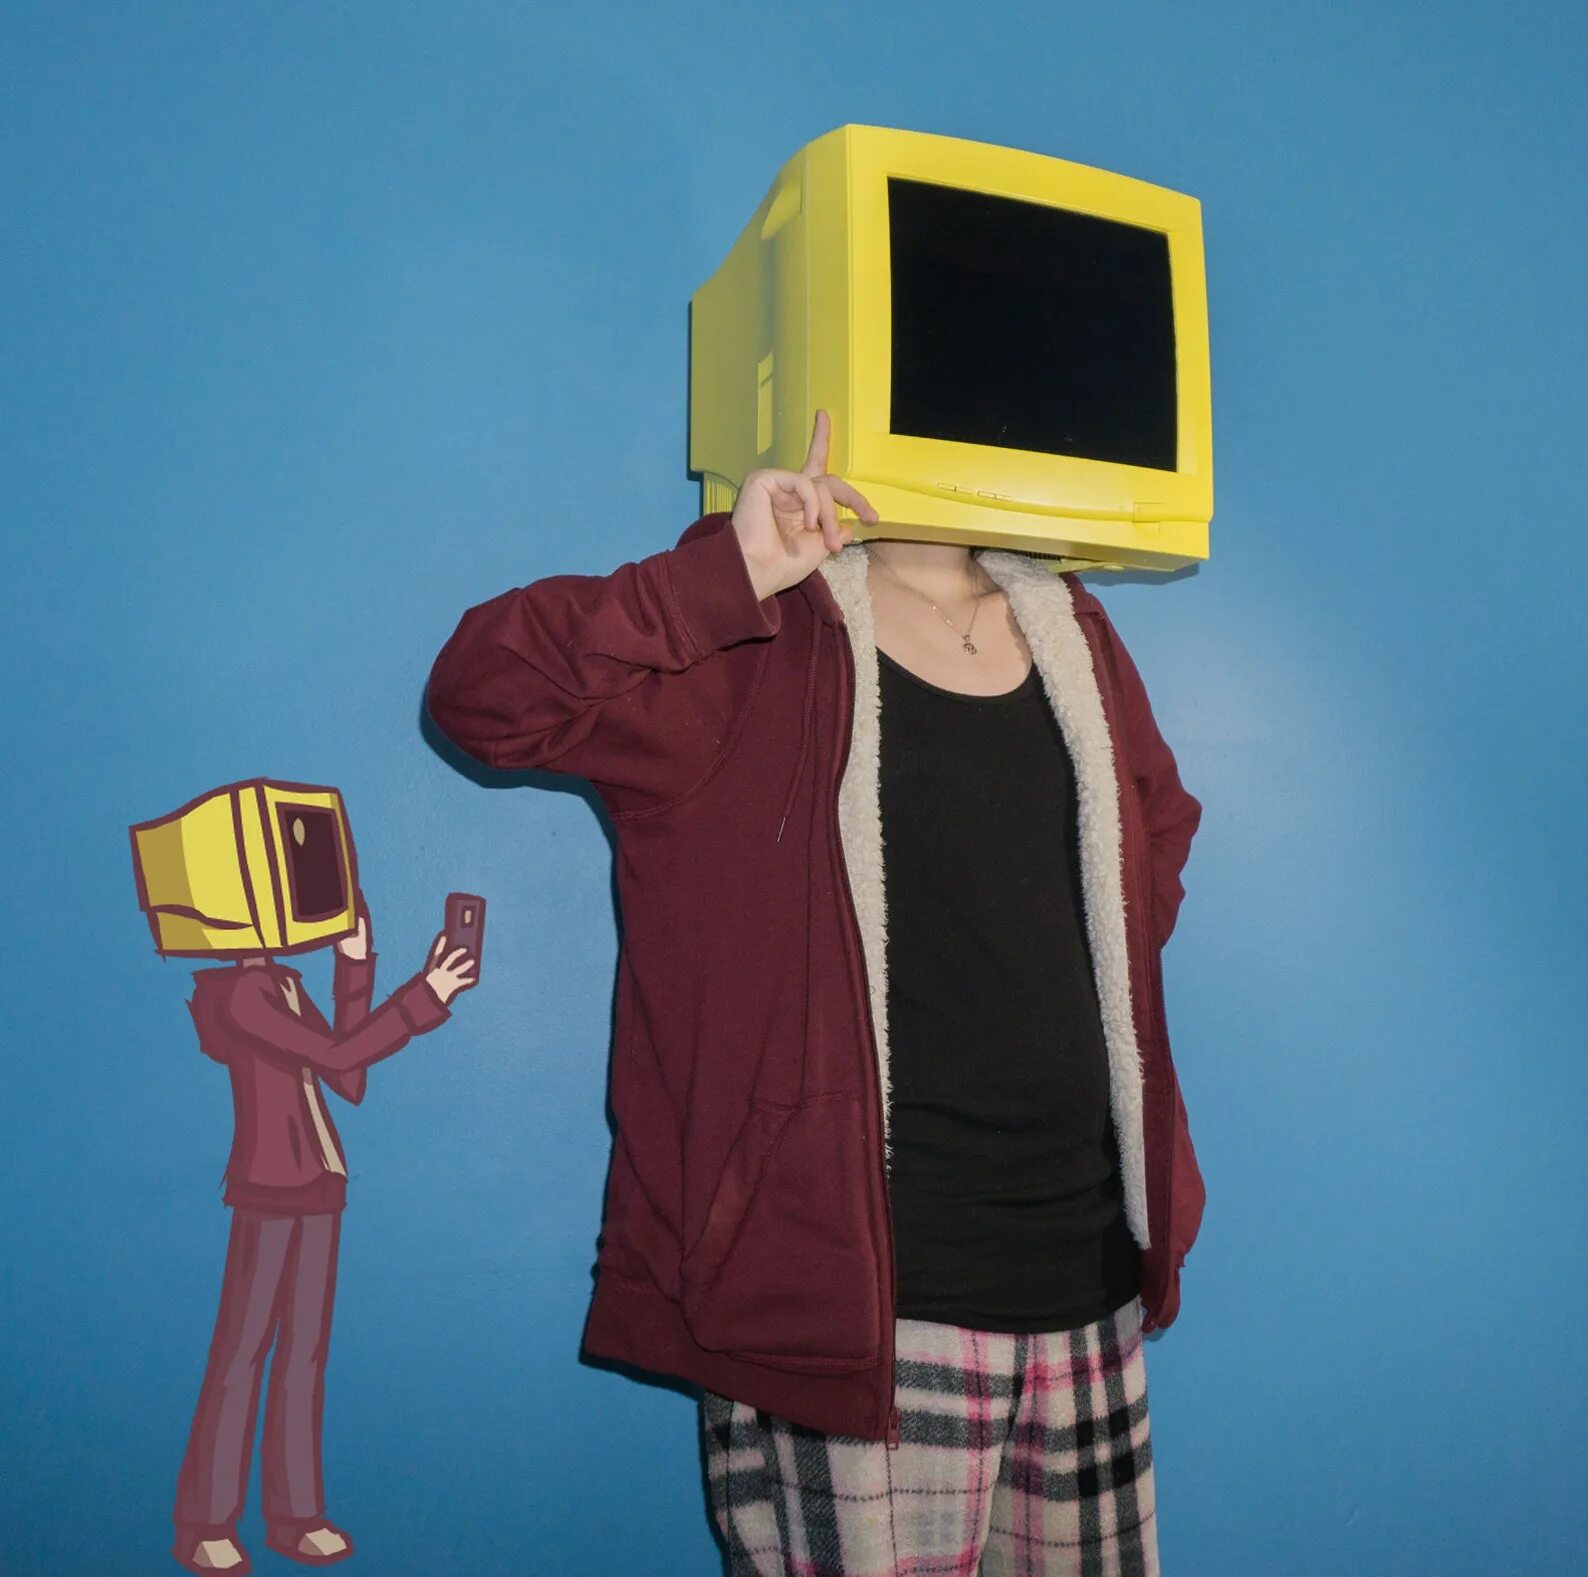 Человек телевизор. Телевизор вместо головы. Человек с головой телевизора. Человек с телевизором вместо головы.